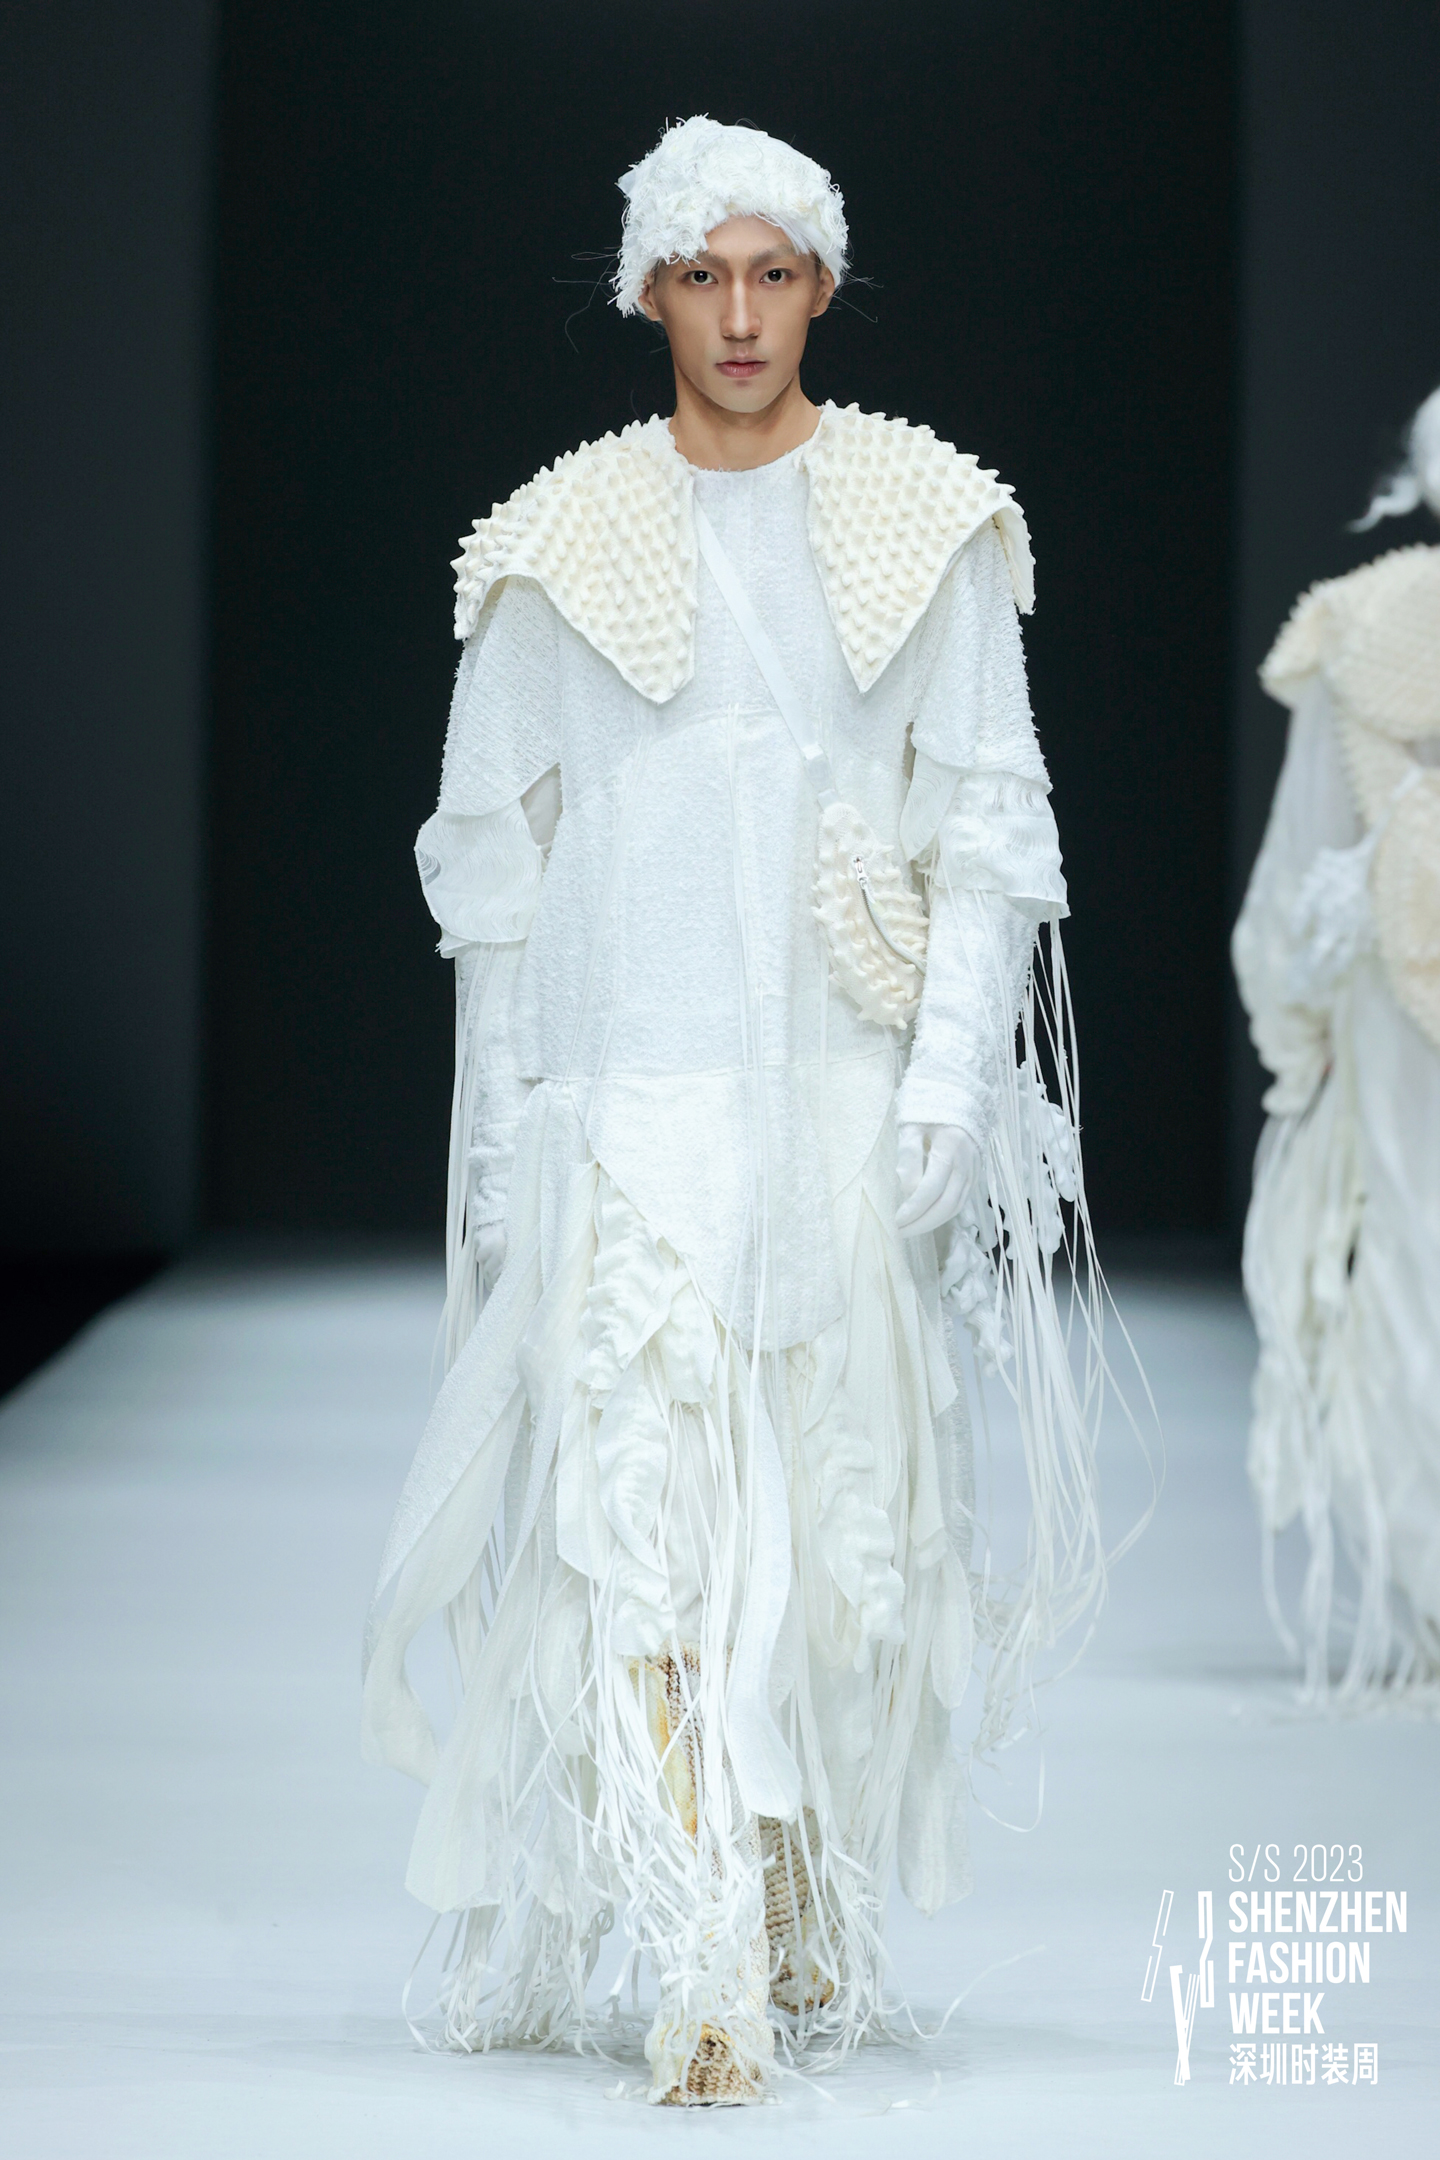 Look by Istituto Marangoni Shenzhen Fashion Design student Xu Xiaoyan